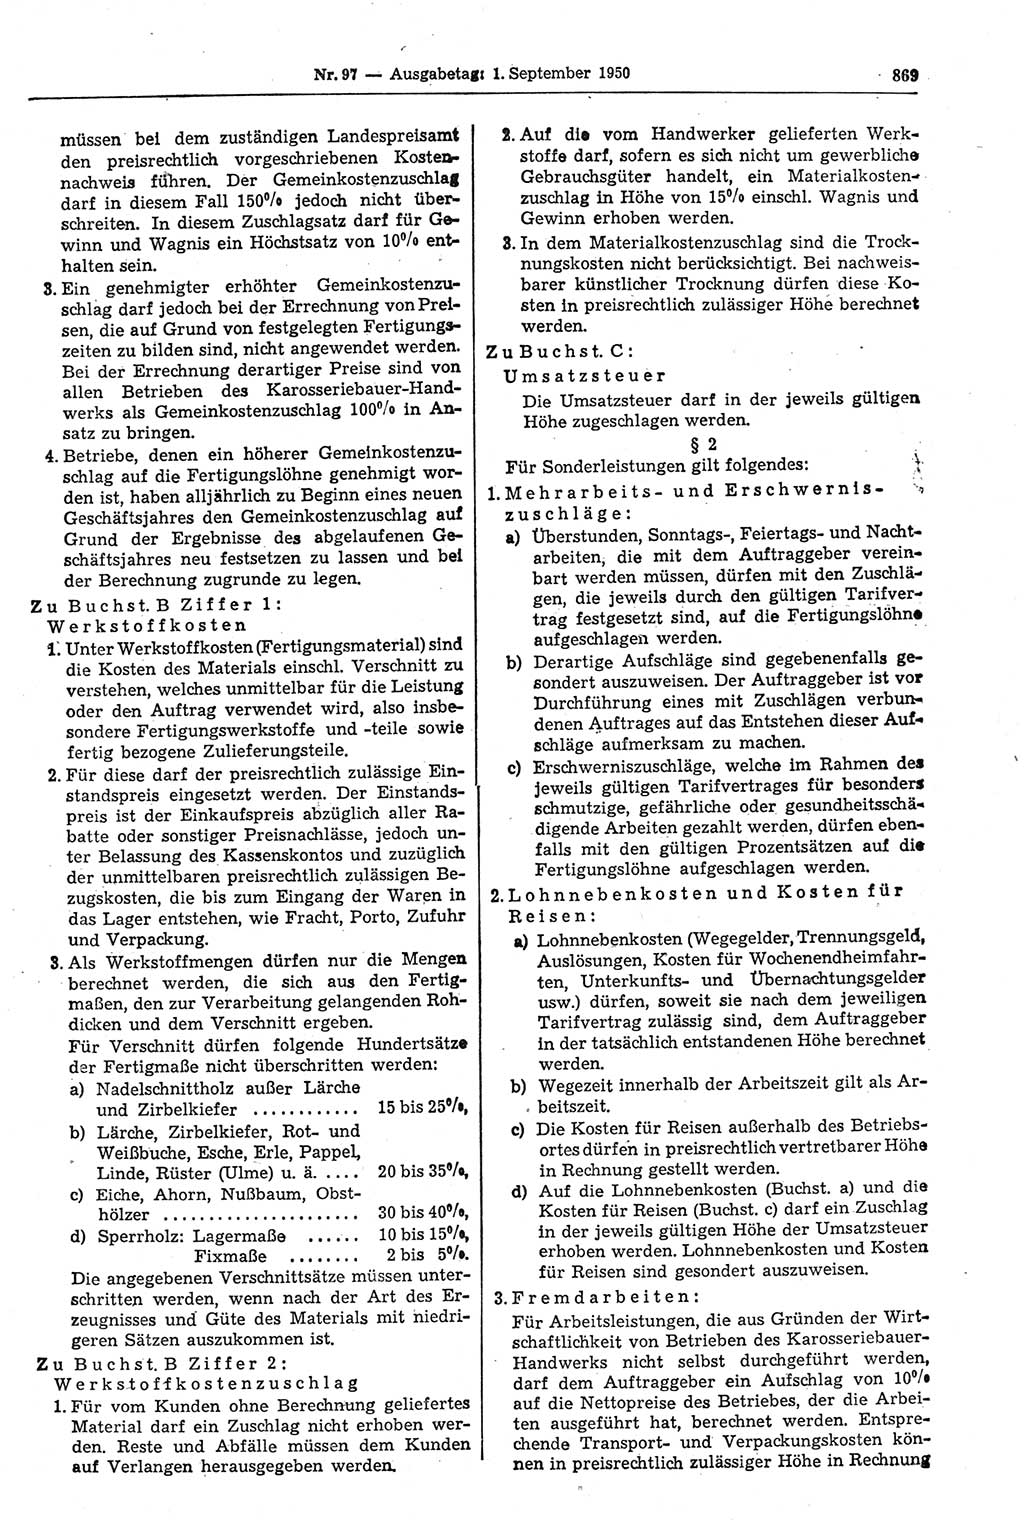 Gesetzblatt (GBl.) der Deutschen Demokratischen Republik (DDR) 1950, Seite 869 (GBl. DDR 1950, S. 869)